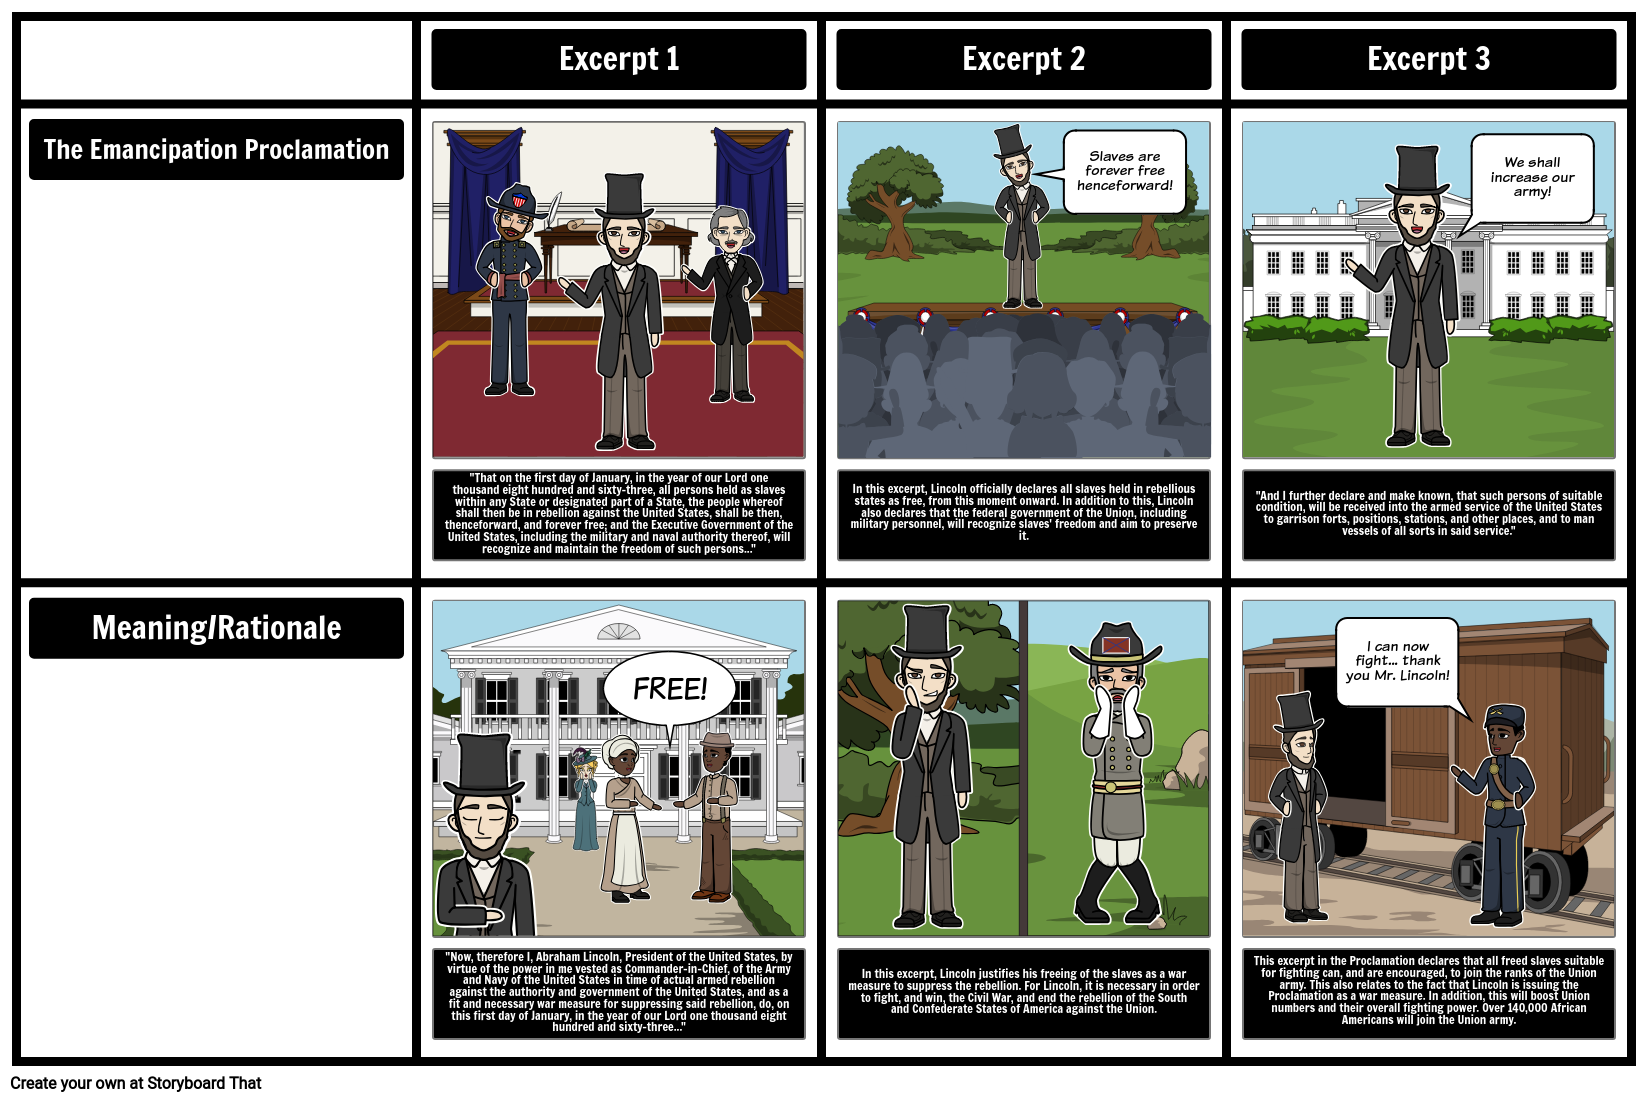 Analyzing the Emancipation Proclamation